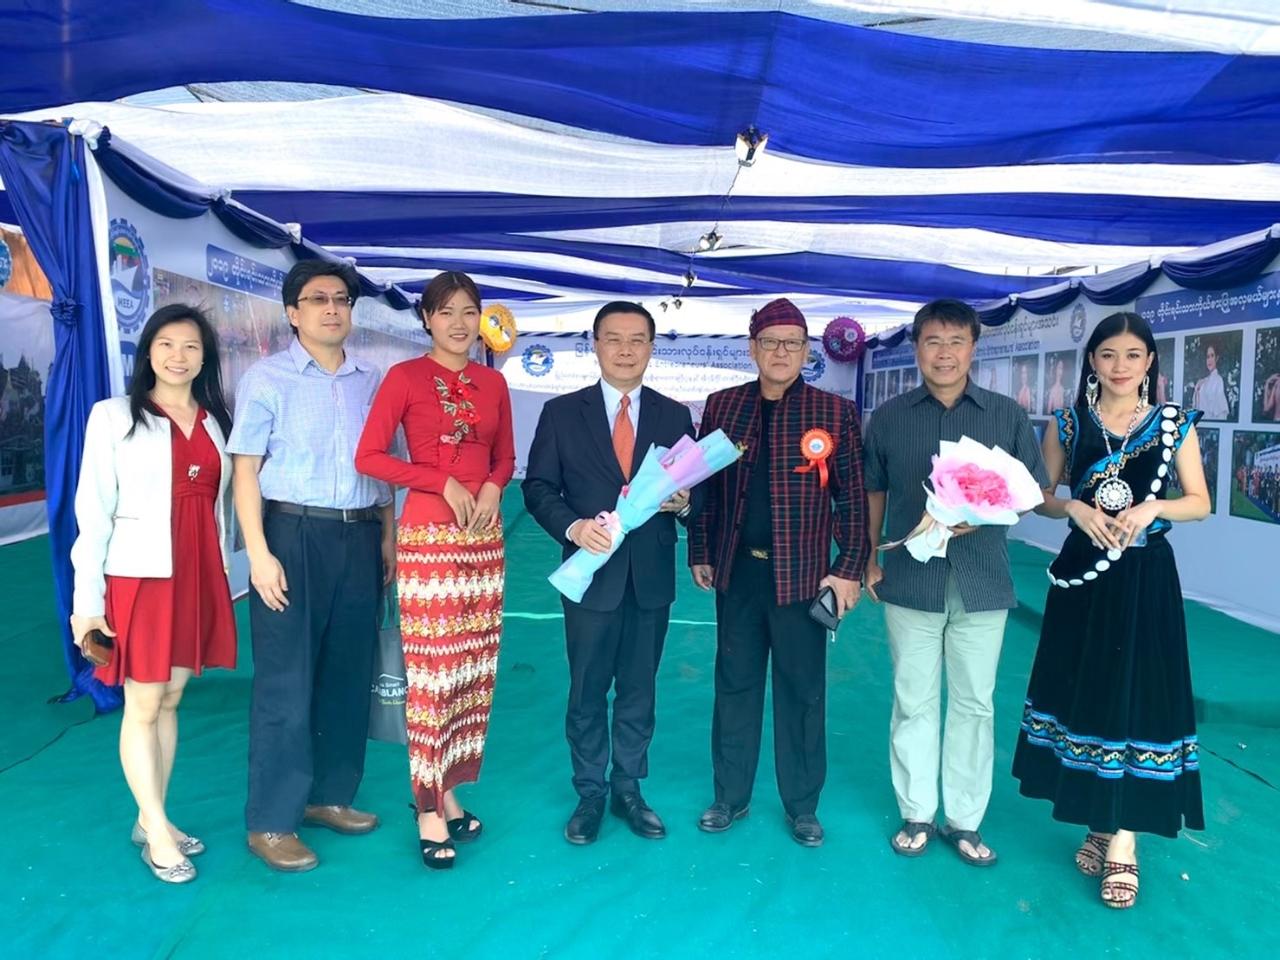 緬甸民族企業家協會(Myanmar Ethnic Entrepreneurs Association,MEEA)歡迎駐緬代表李朝成(中)、副參事張水庸(右)、秘書林世政(左二)、秘書曾靖惠(左一)